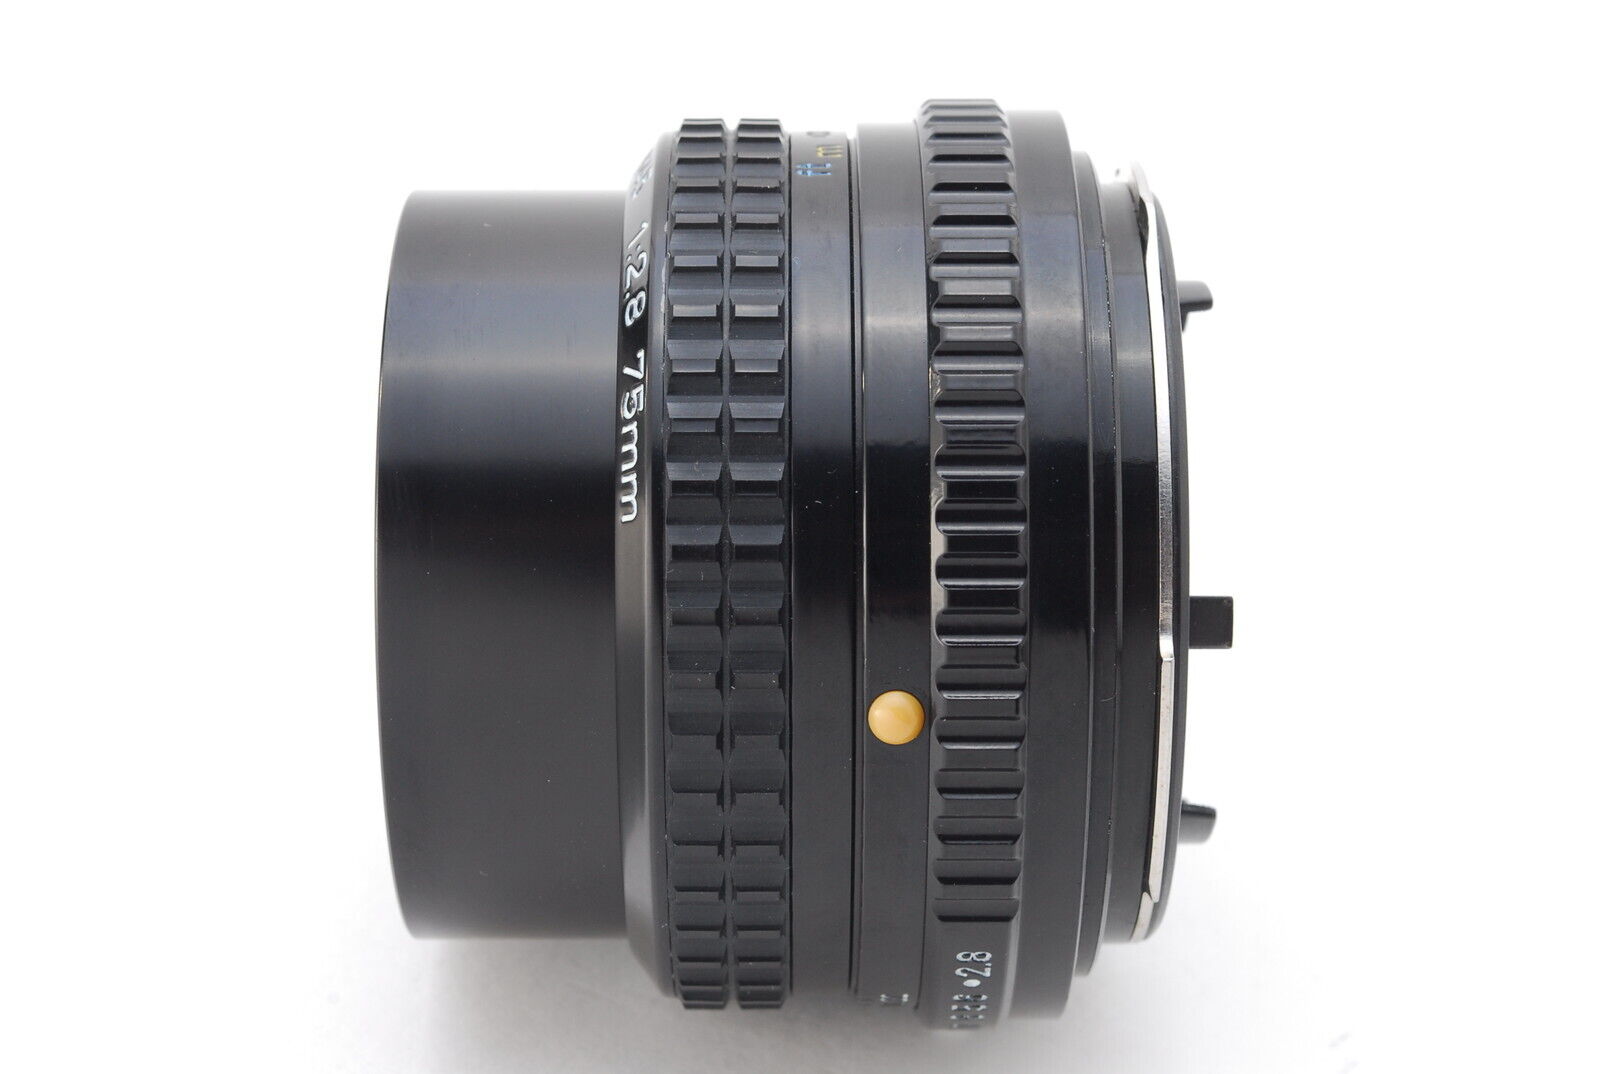 SMC PANTAX-A 645 1:2.8 75mmレンズ(単焦点) - レンズ(単焦点)